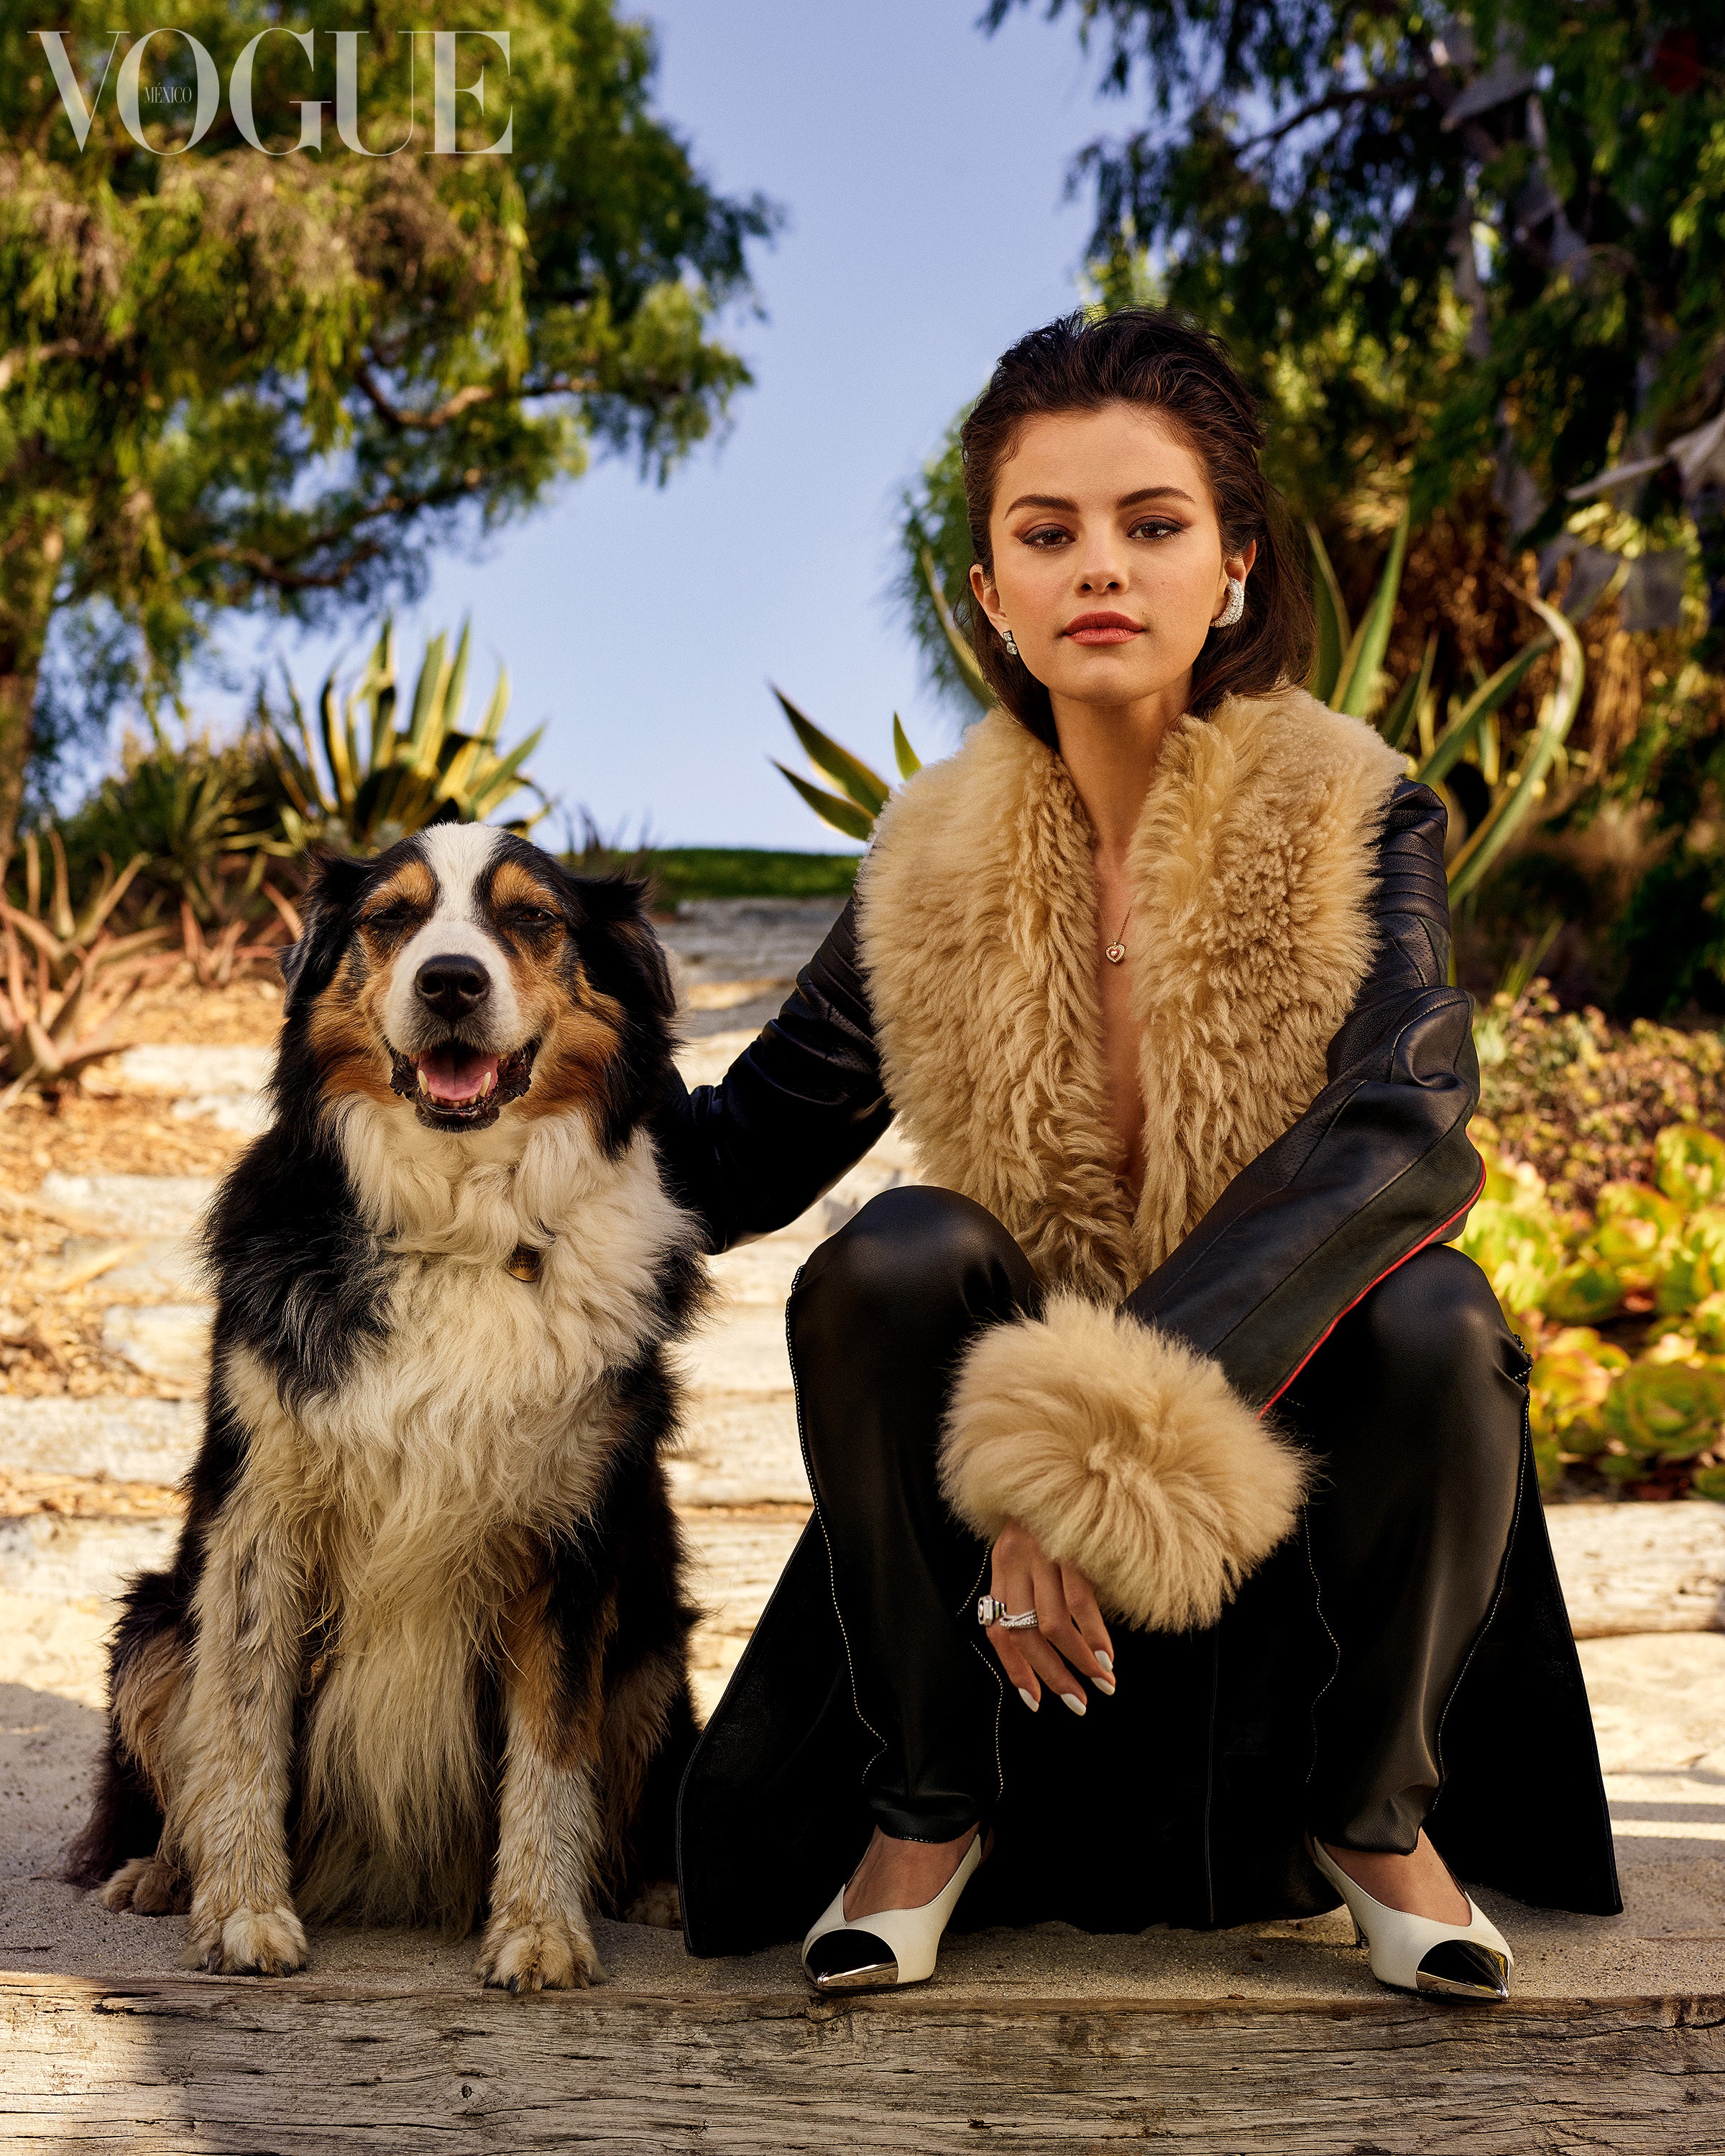 Fotos n°1 : Selena Gomez en Mxico con un perro!